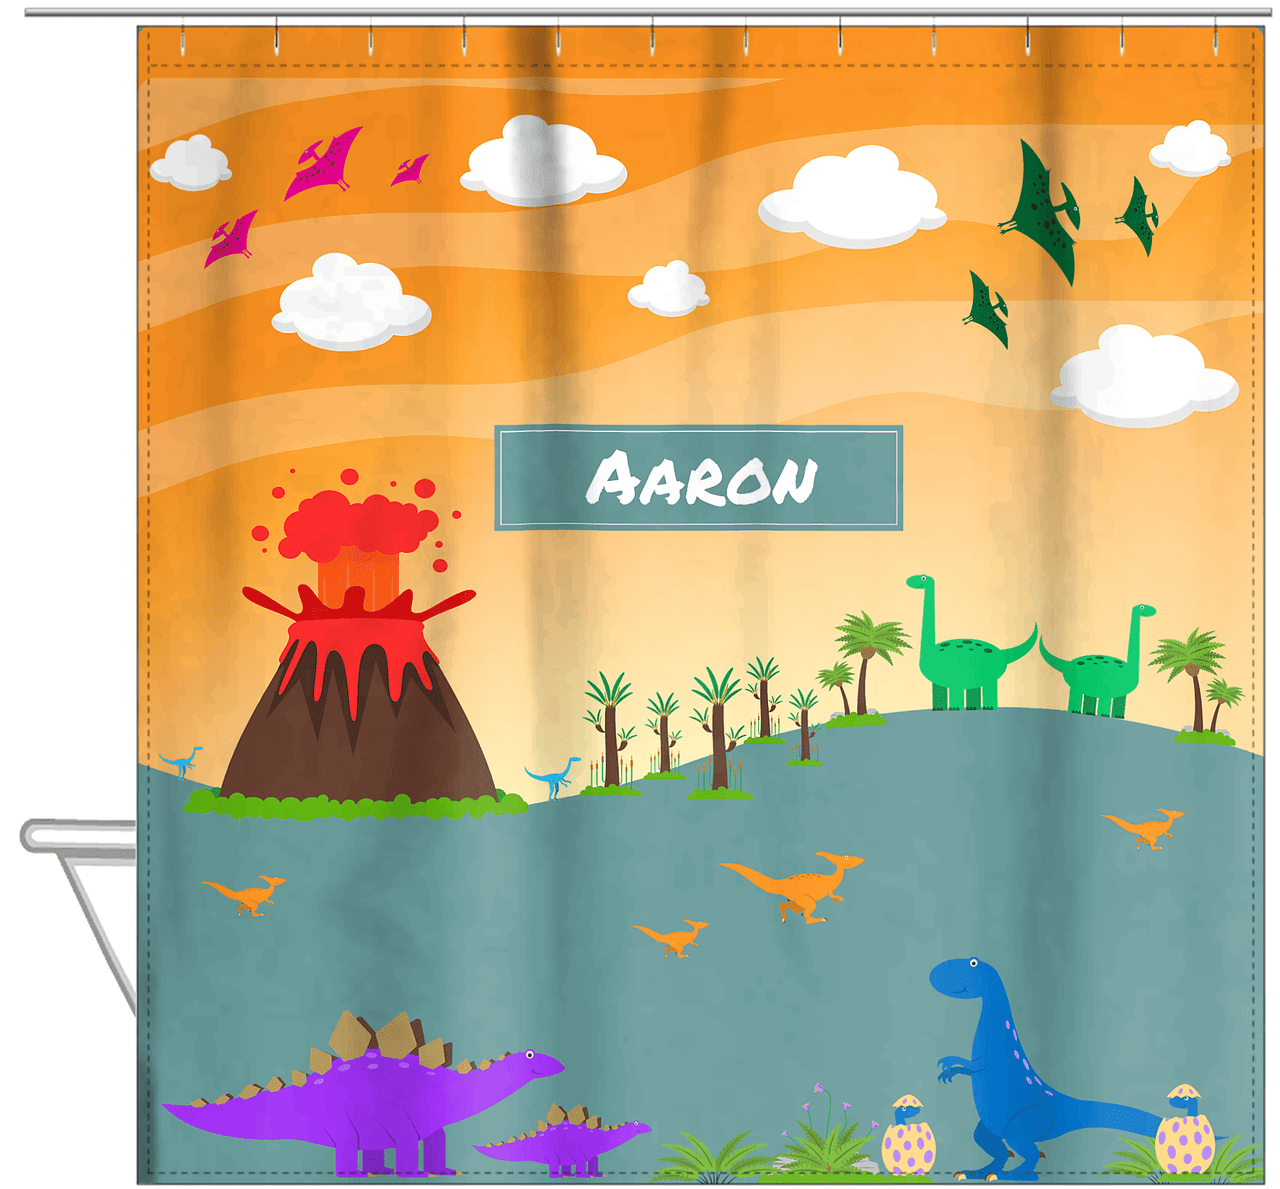 Personalized Dinosaur Shower Curtain I - Orange Background - Nameplate I - Hanging View